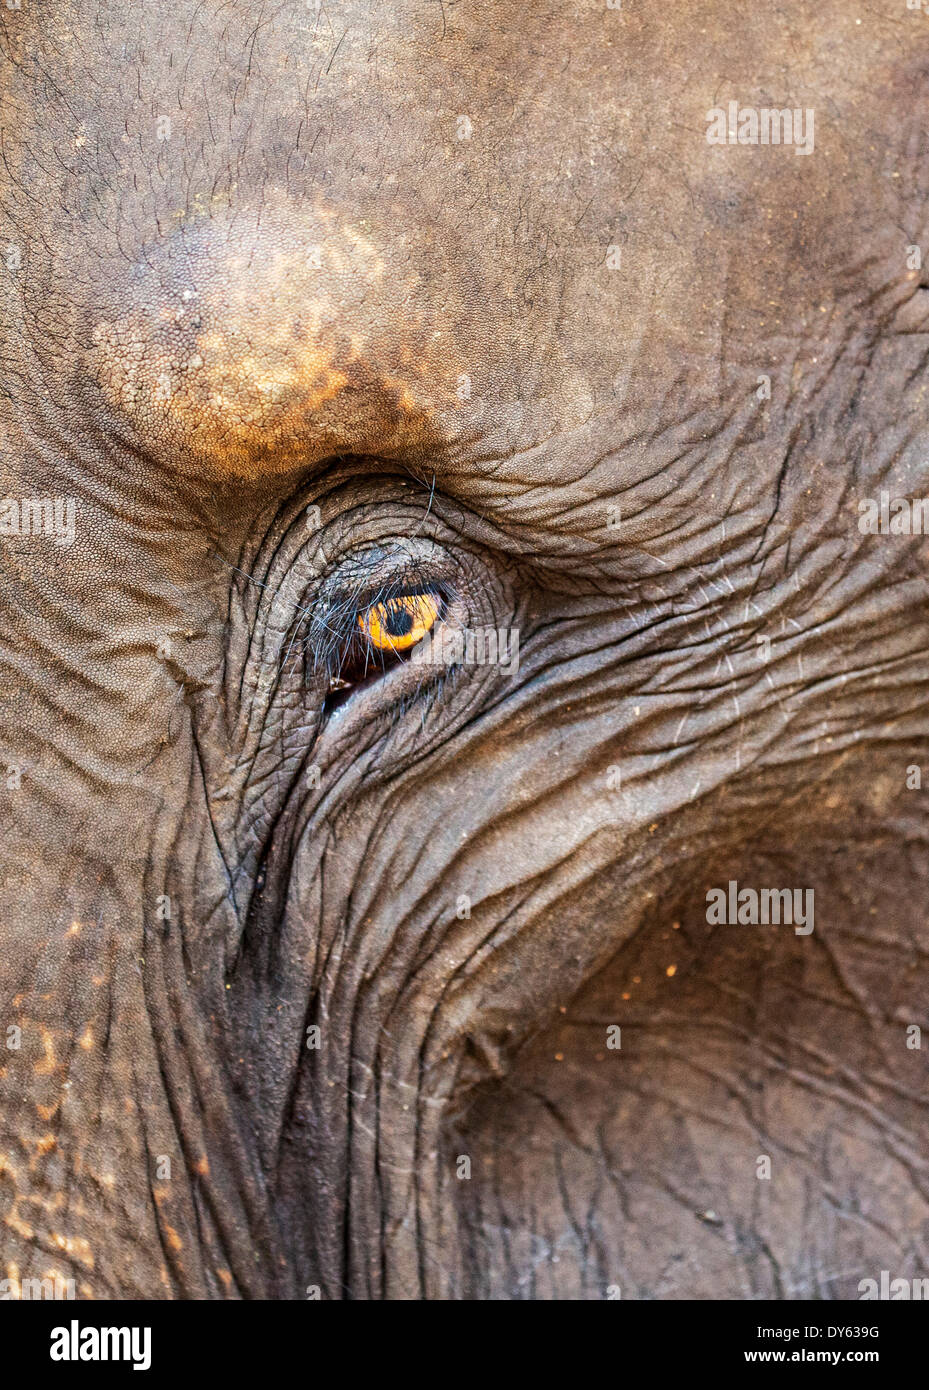 Close up of a adult elephant's (Elephantidae) eye and crinkled skin, Pinnewala Elephant Orphanage, Sri Lanka, Asia Stock Photo